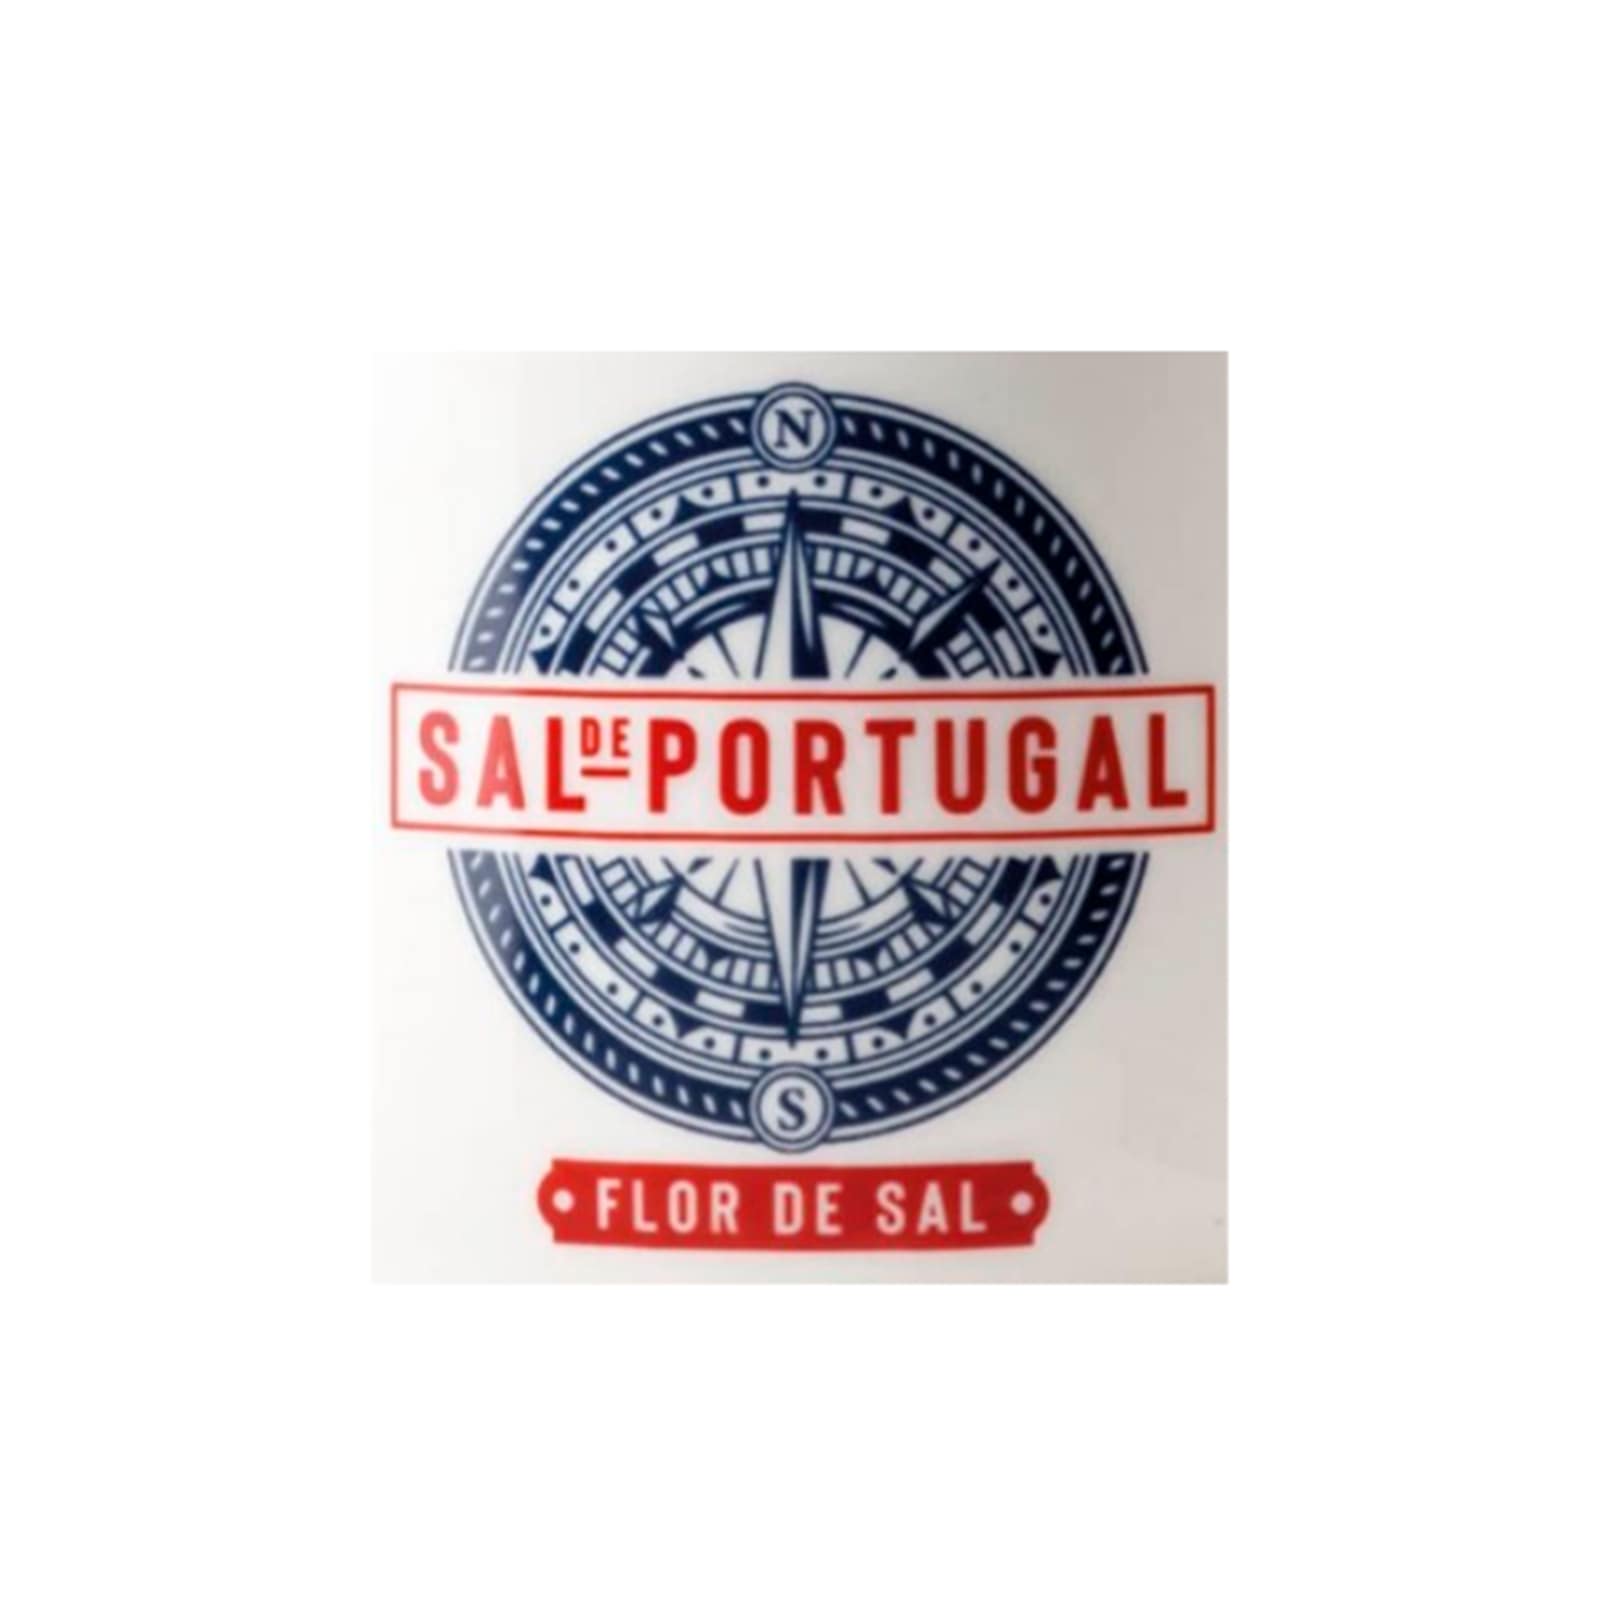 Sal de Portugal Fiore di sale